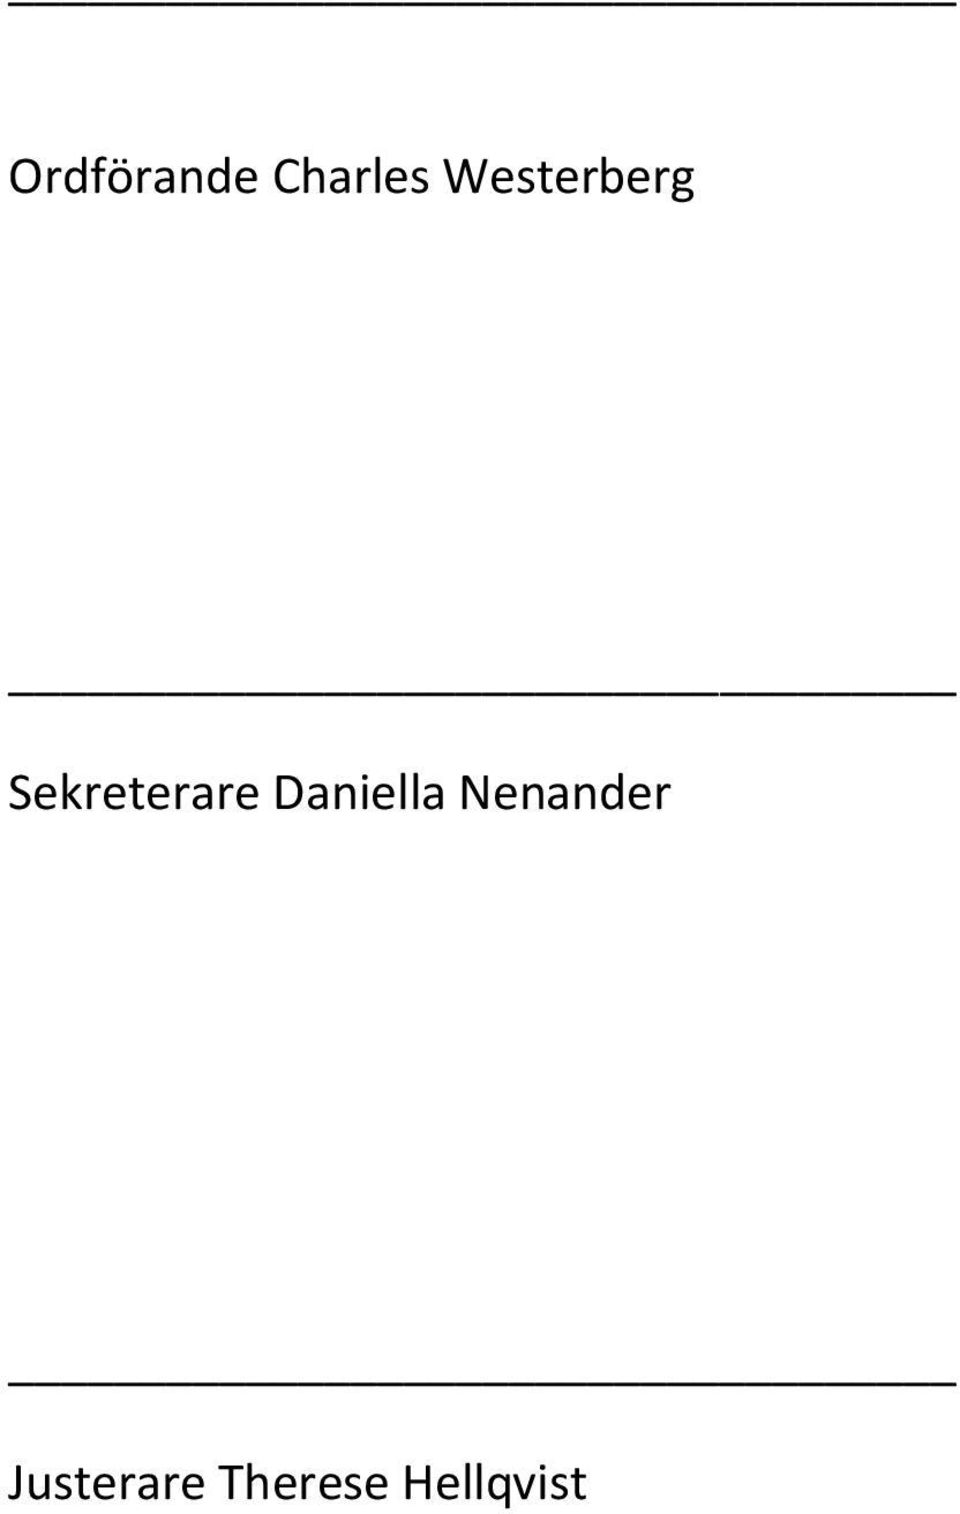 Sekreterare Daniella